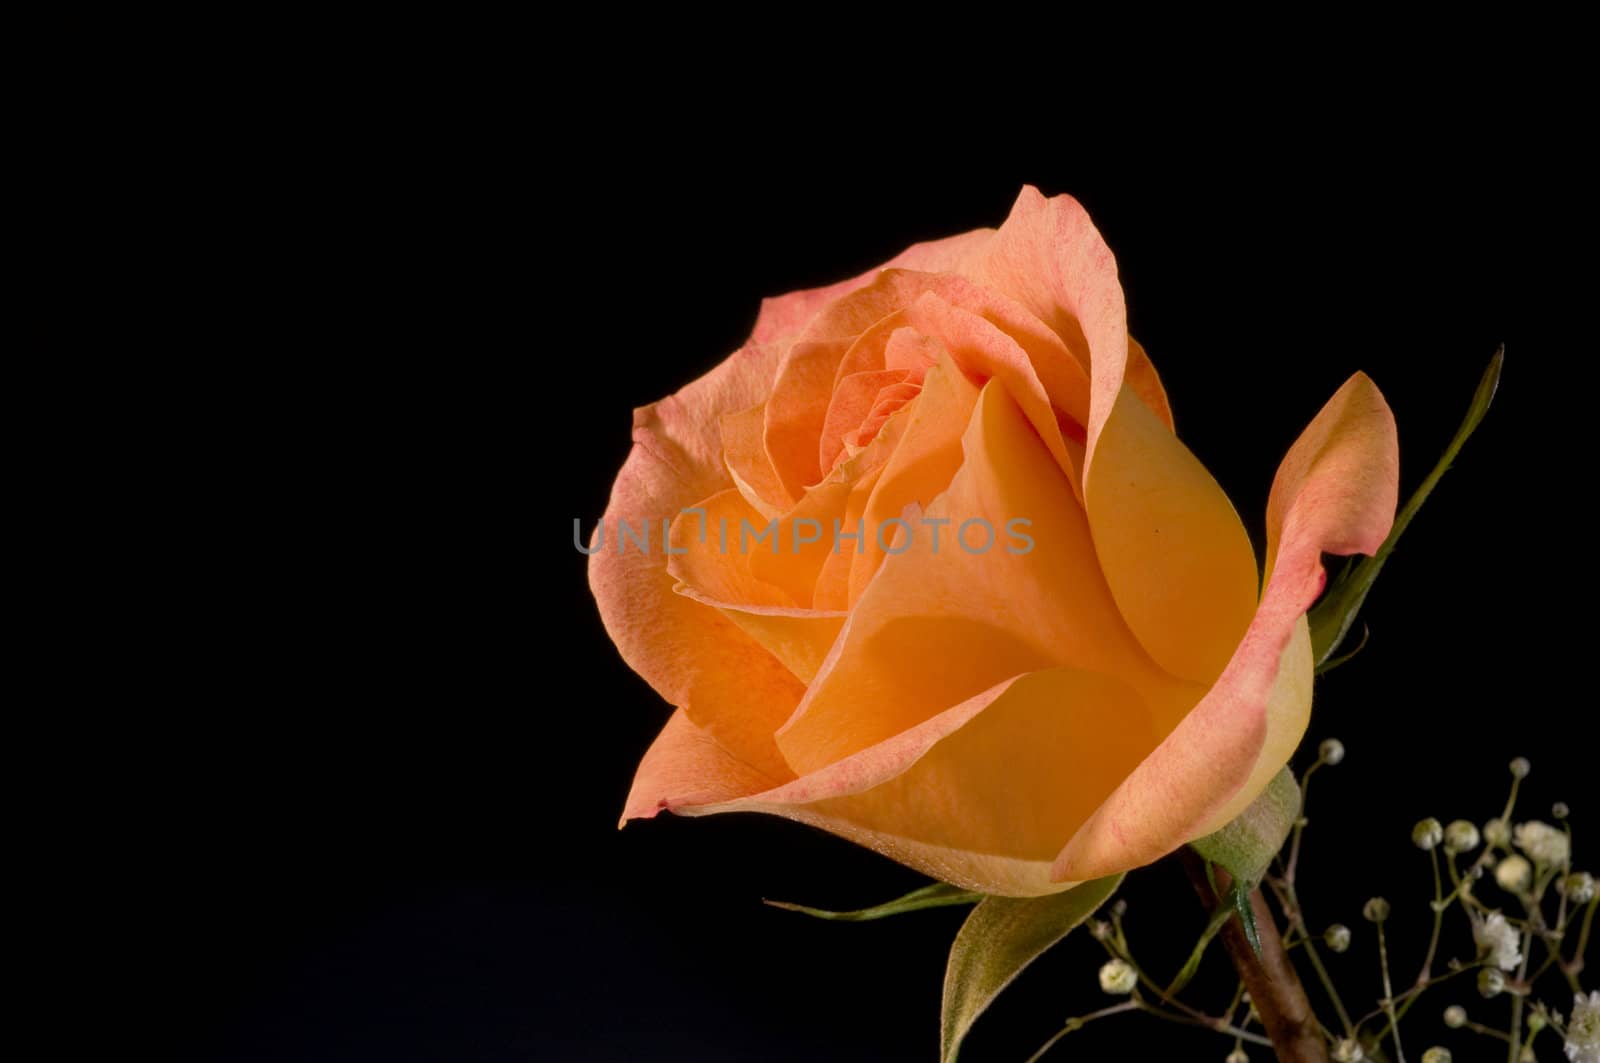 Single orange rose on black background